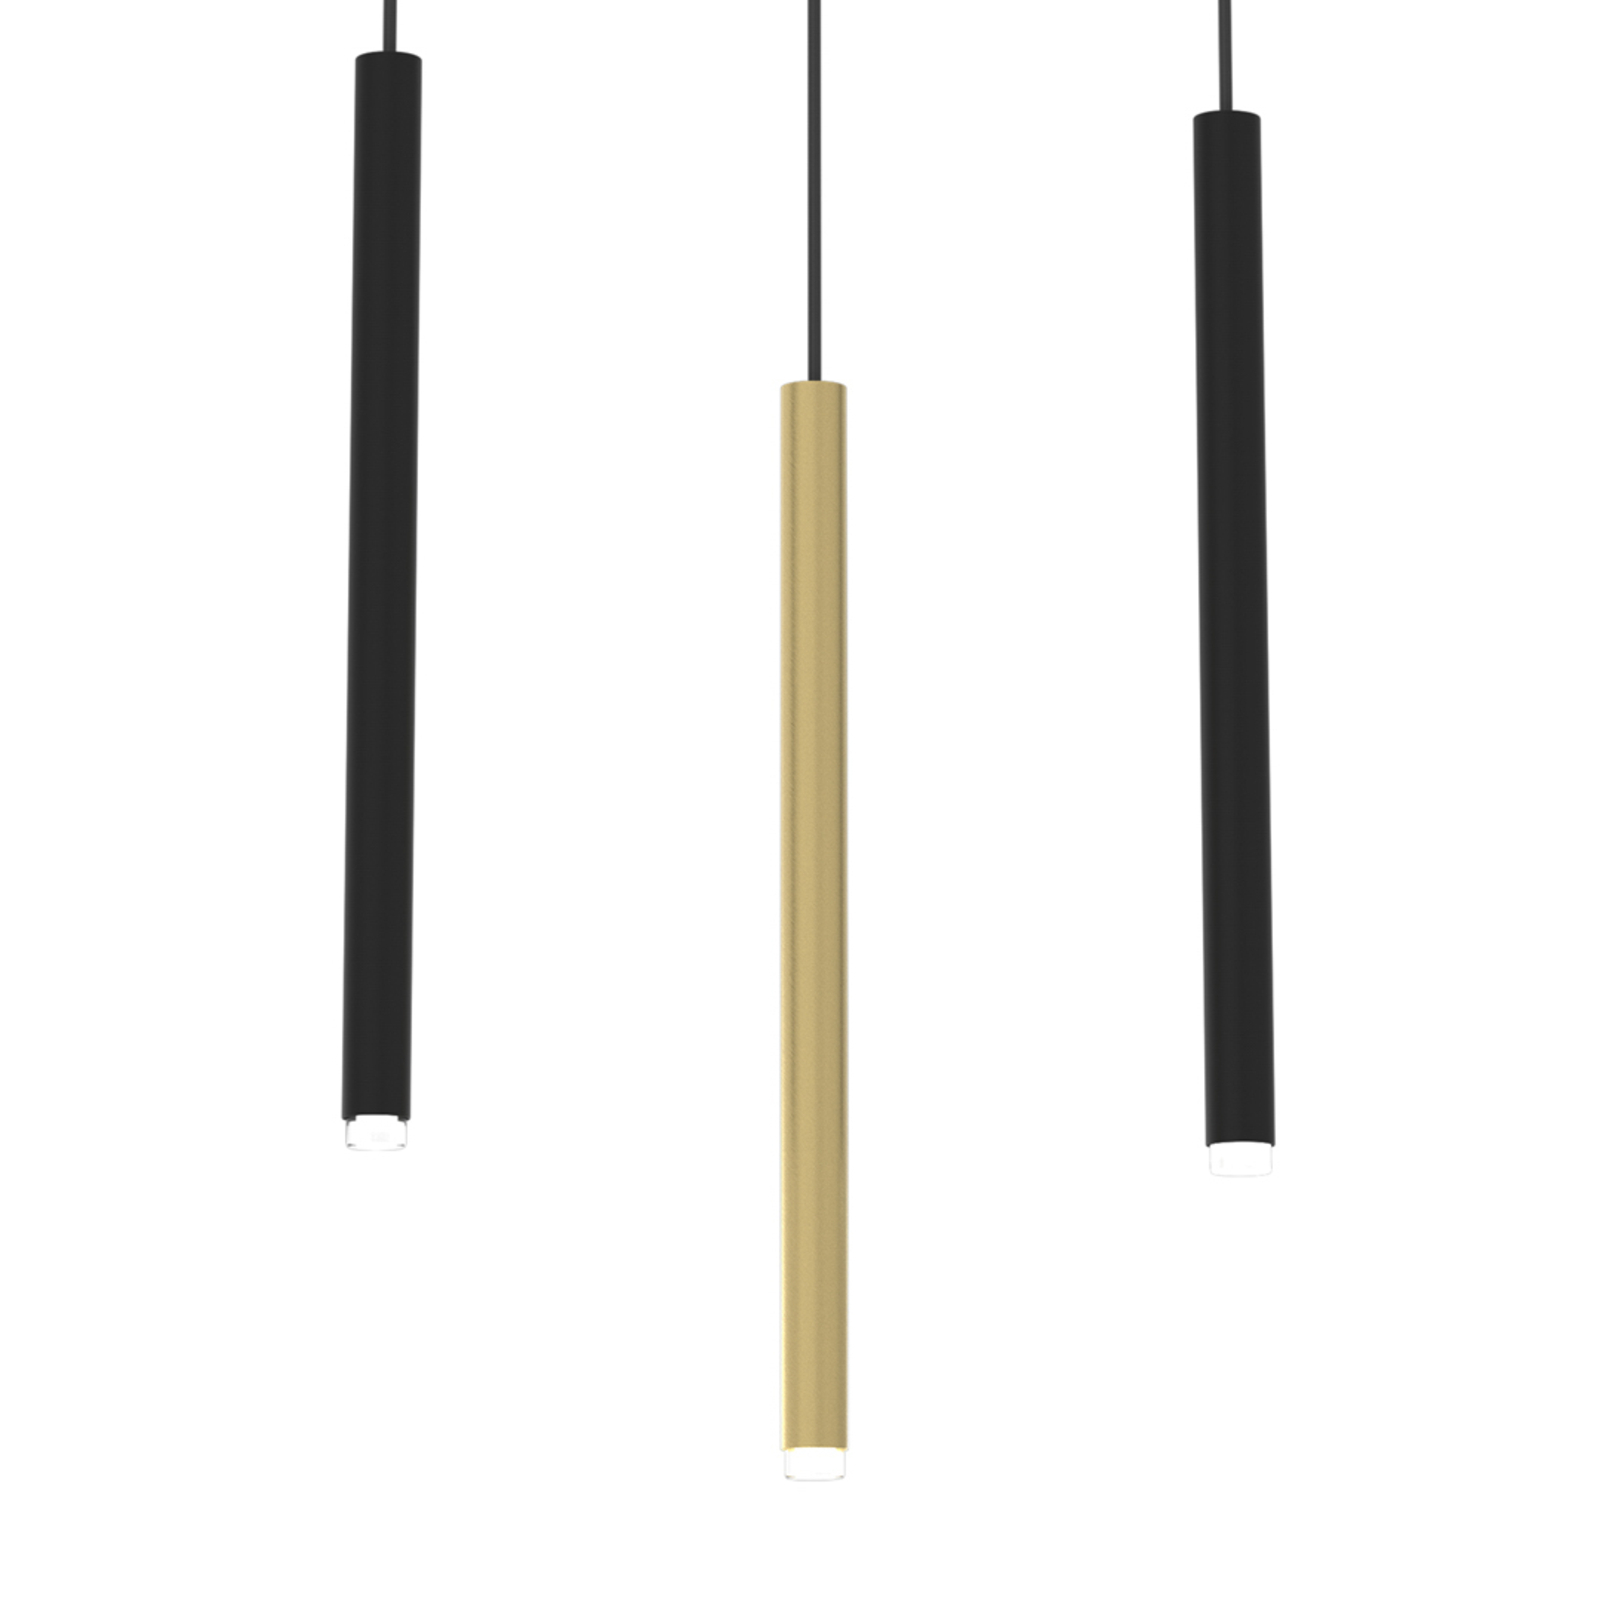 Hanglamp Monza, zwart/goud, 3-lamps